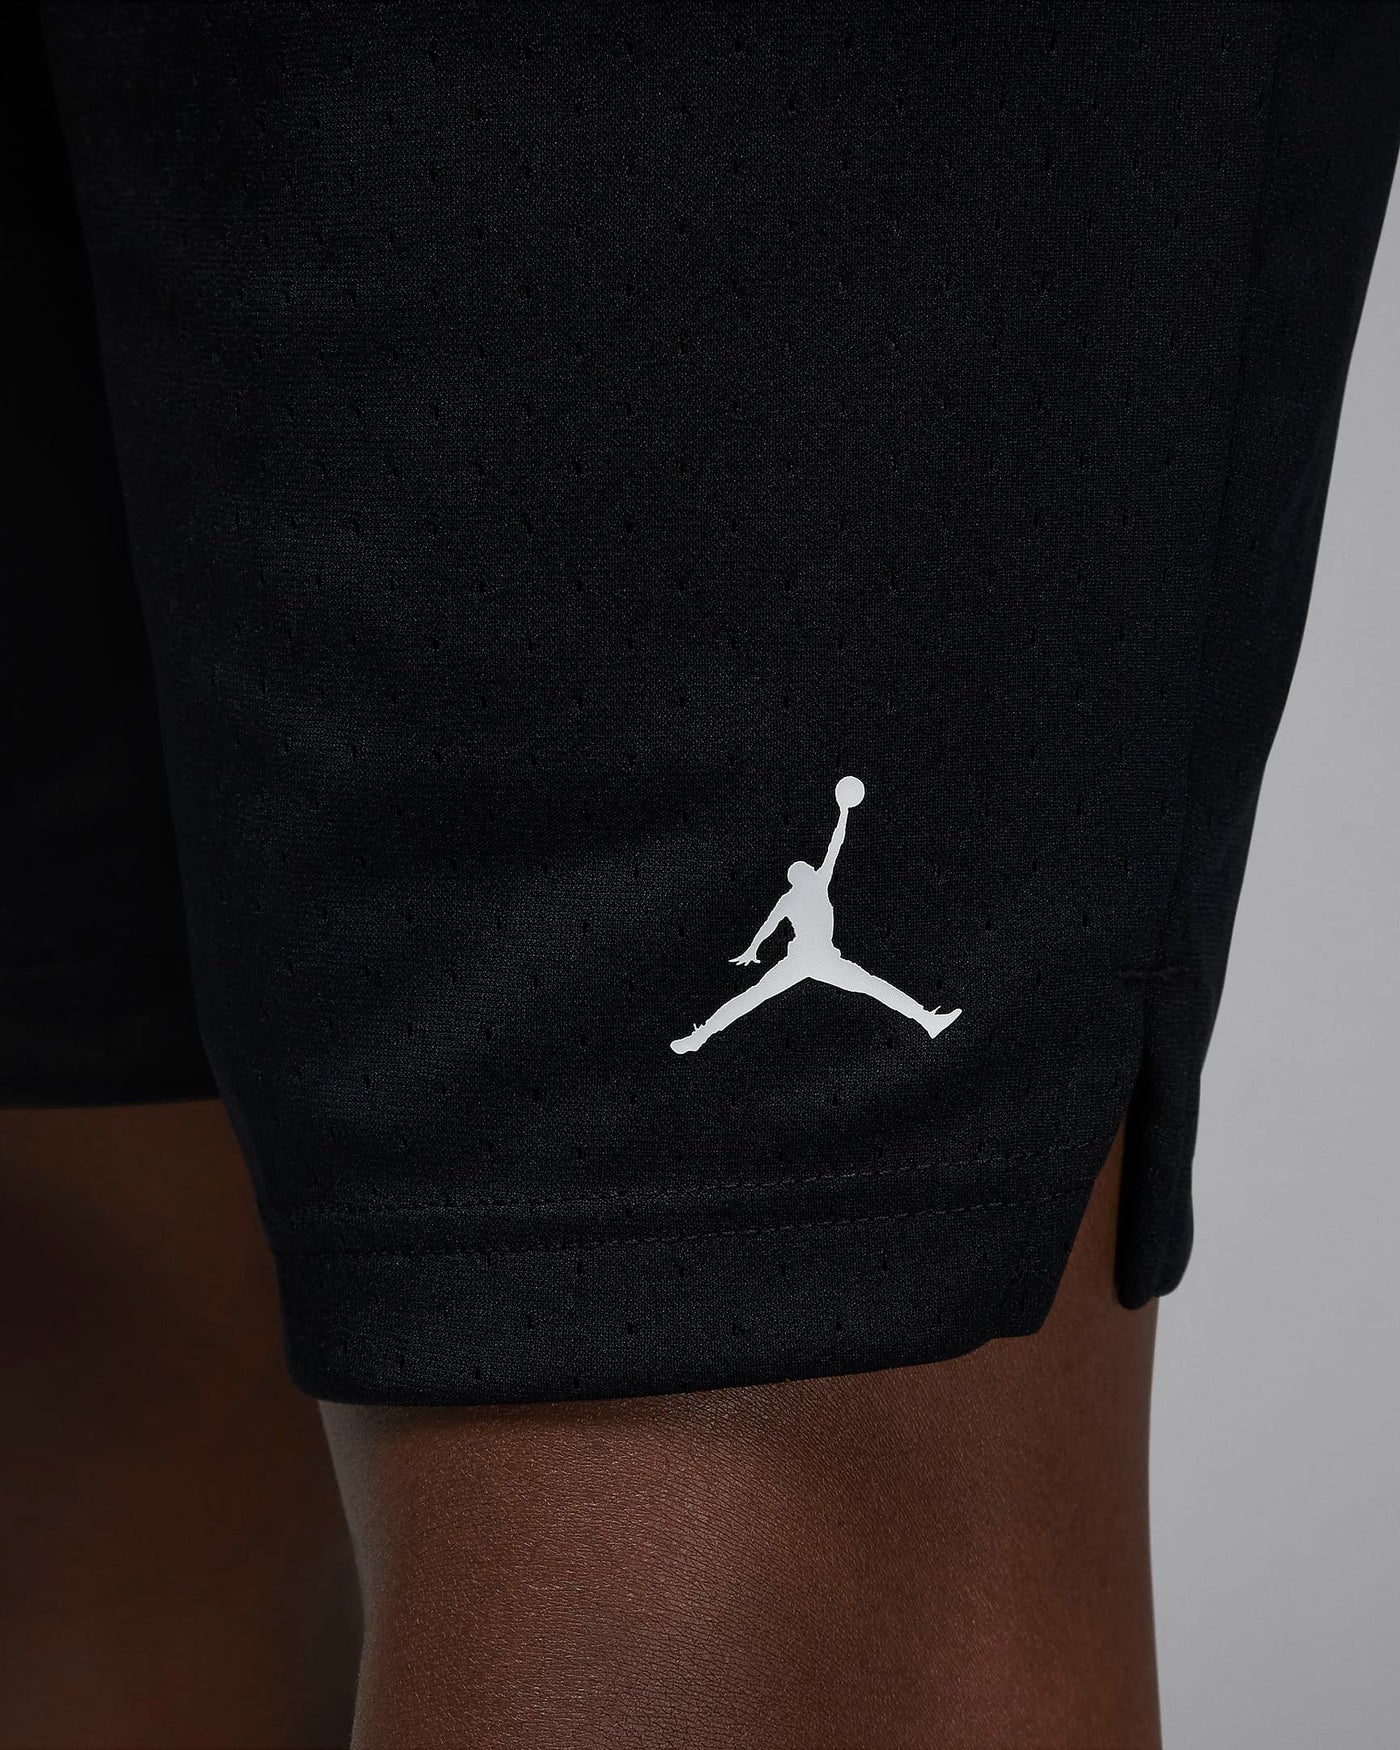 Jordan Dri-FIT SportMen's Mesh Shorts